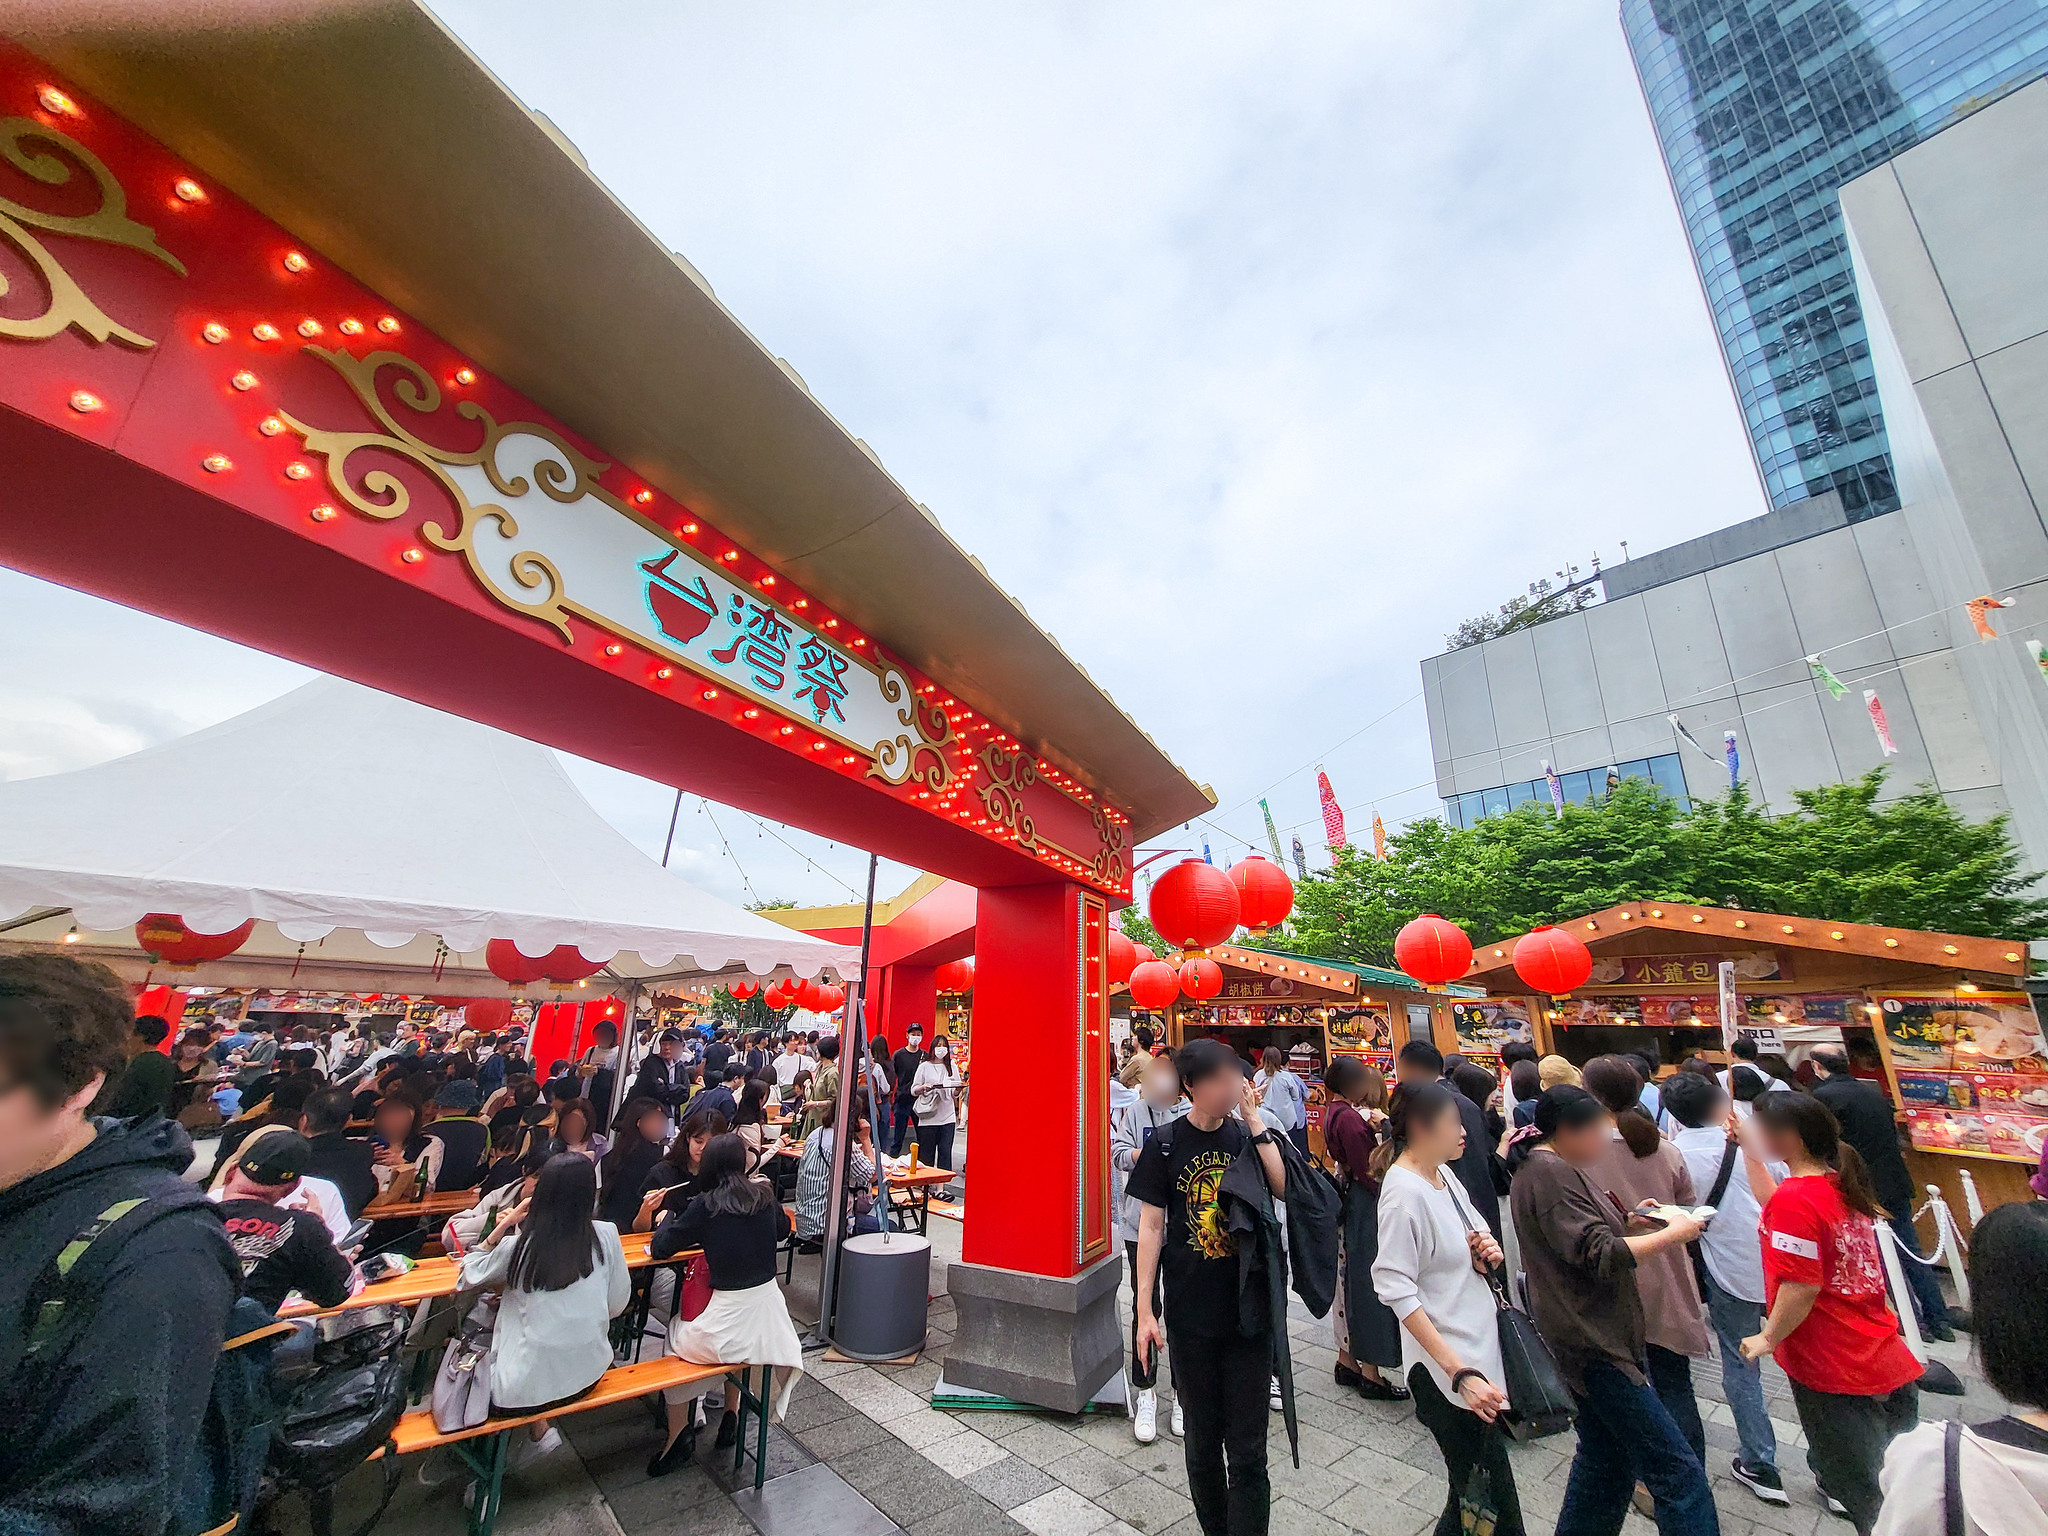 #東京スカイツリー #台湾祭 と #こいのぼり と #ヨックモック